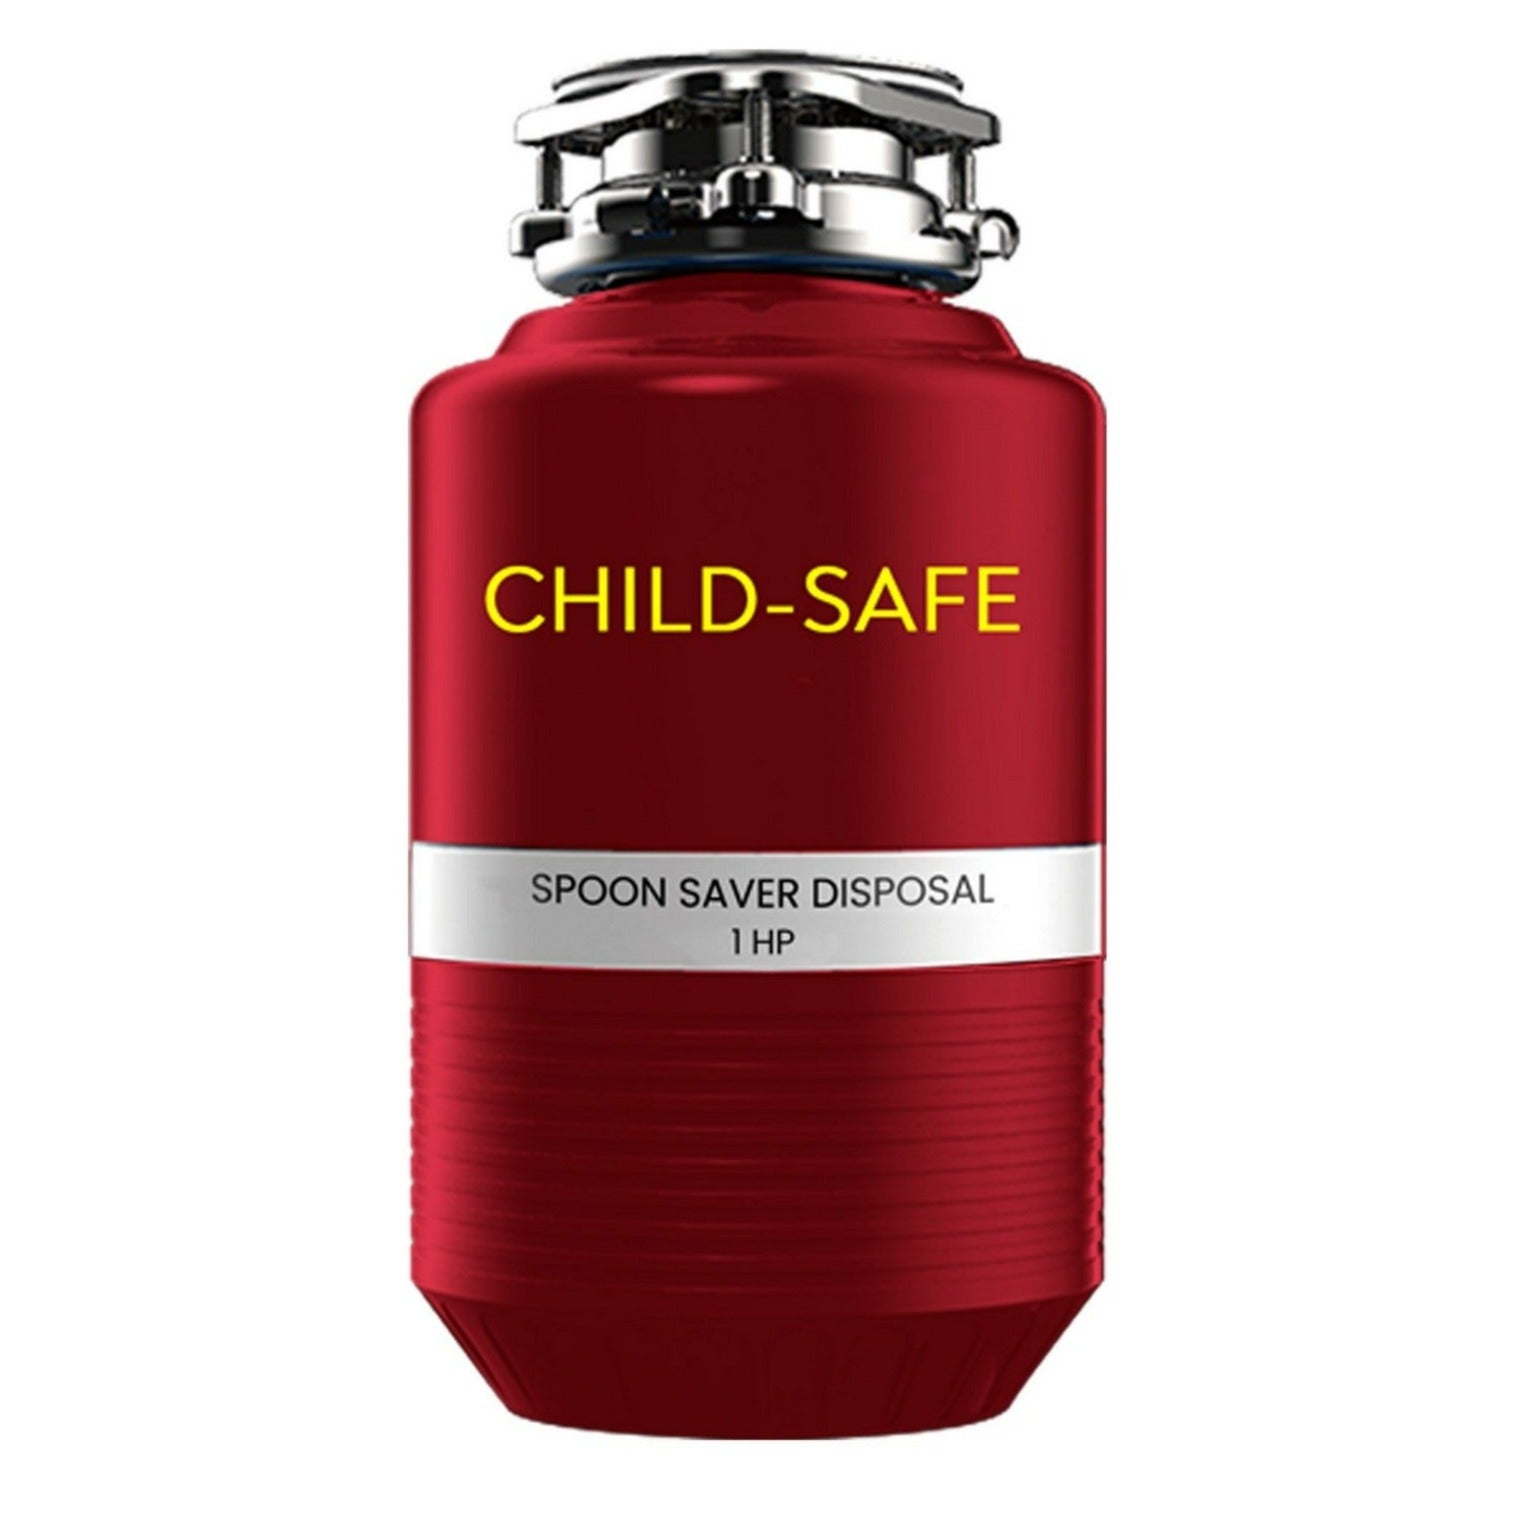 Spoon Saver Kitchen Waste Disposal - Child Safe - 1HP